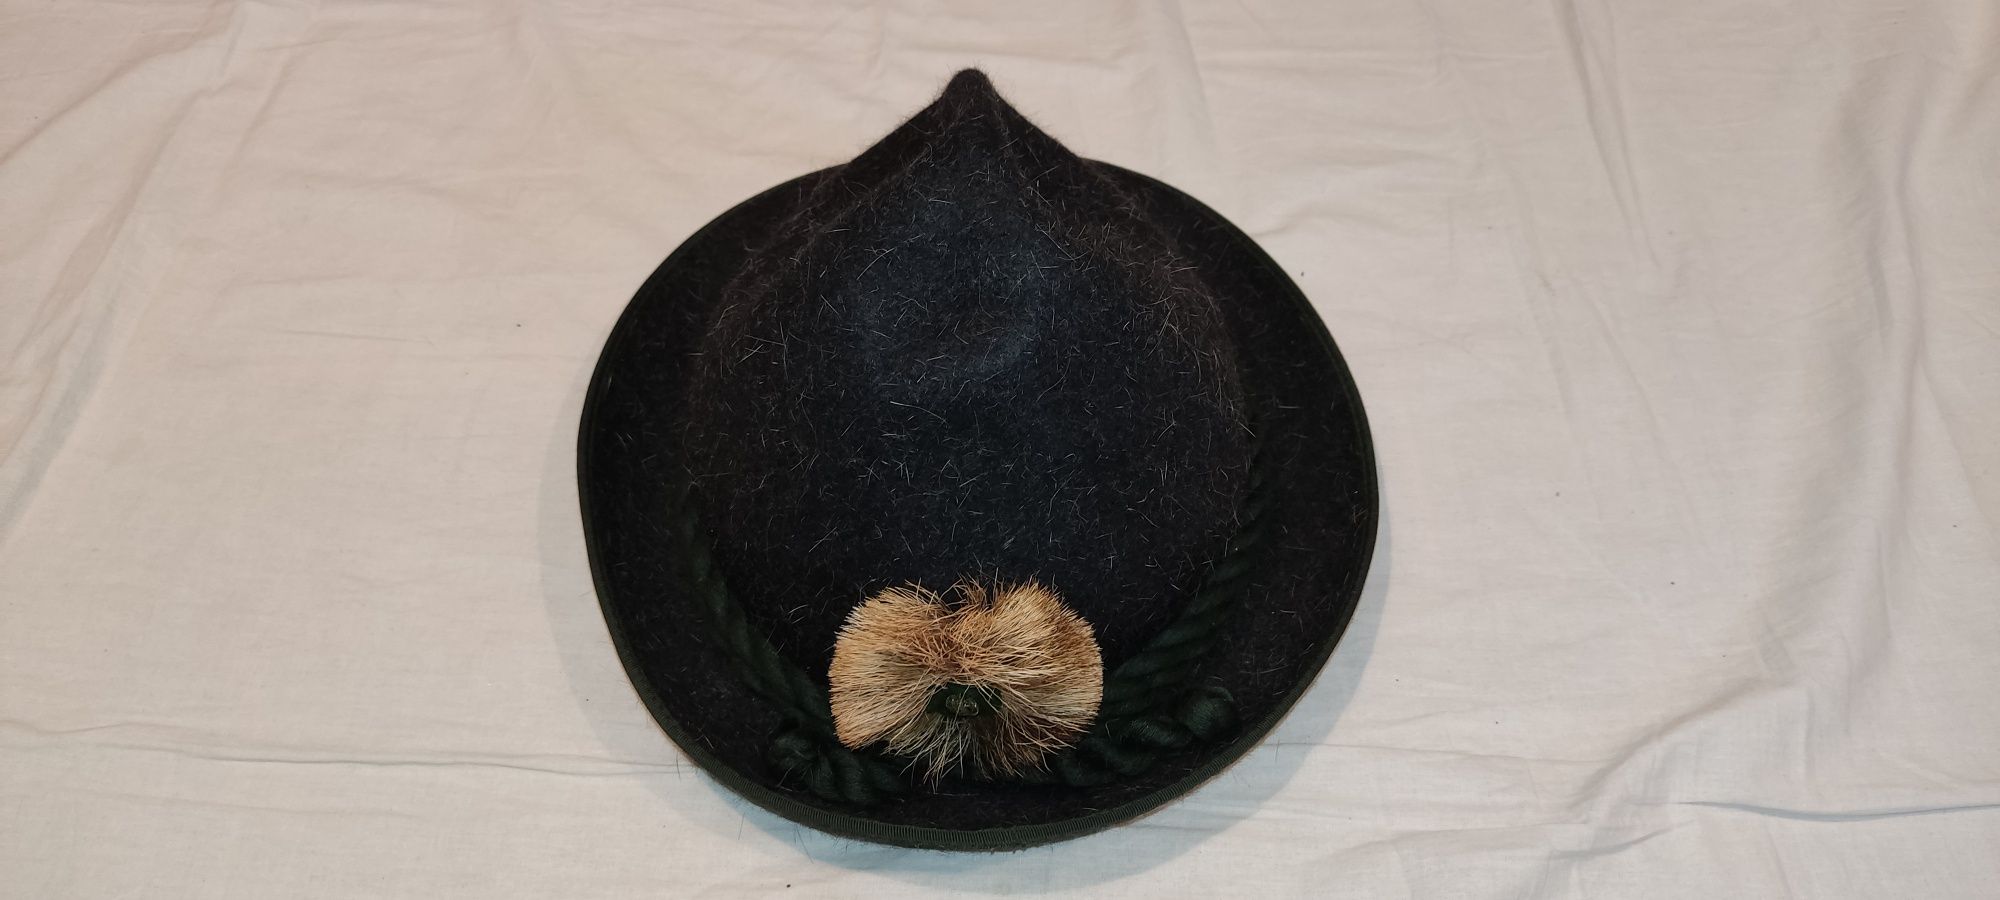 Pălărie vânătoare 57 Huckel 1799 Hut Breiter vânător pădurar trofeu